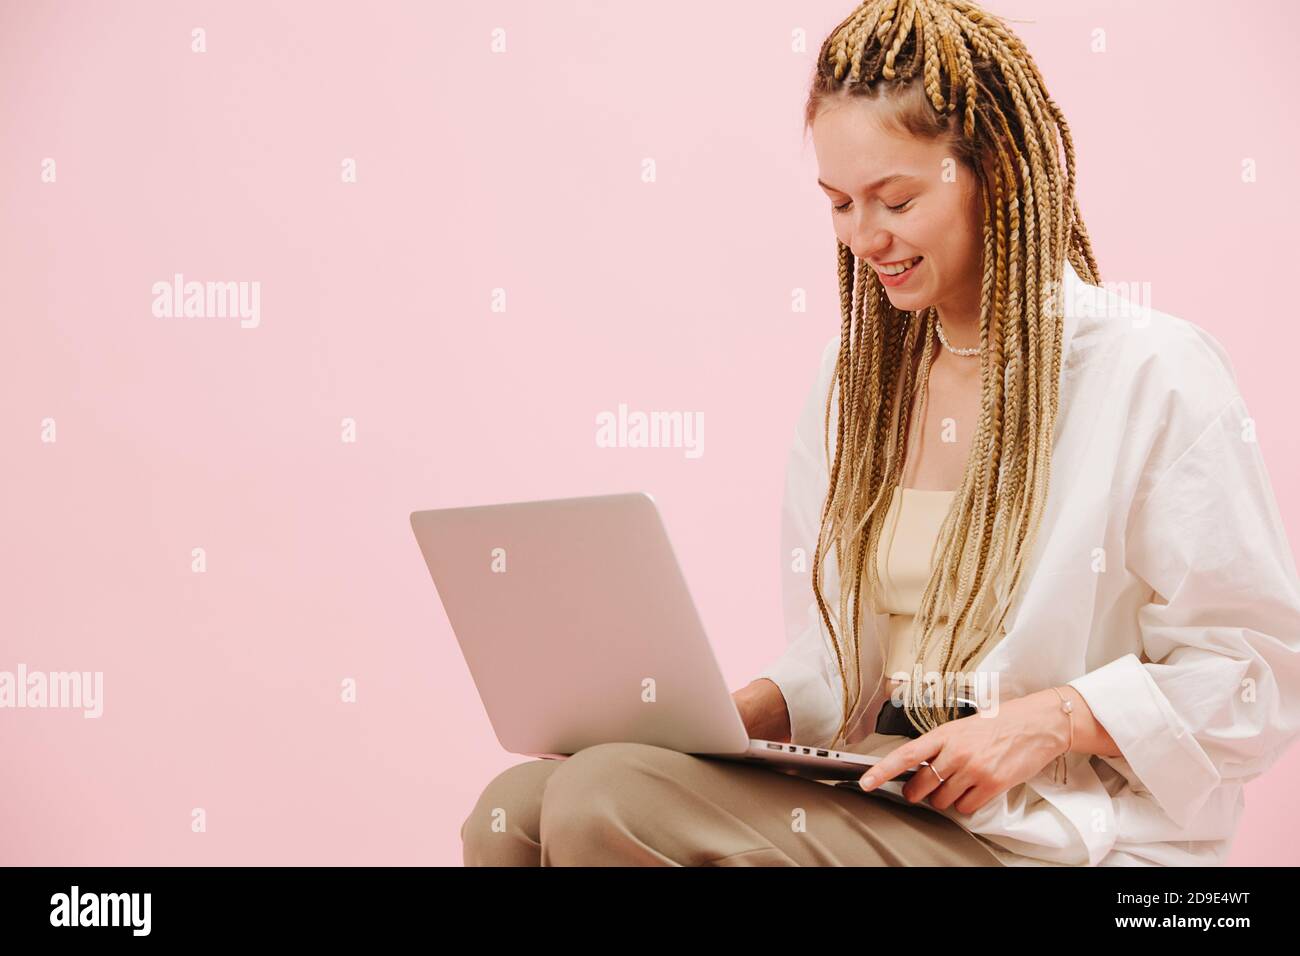 Bonne jeune femme avec des tresses blondes afro élégantes un ordinateur portable plus rose Banque D'Images